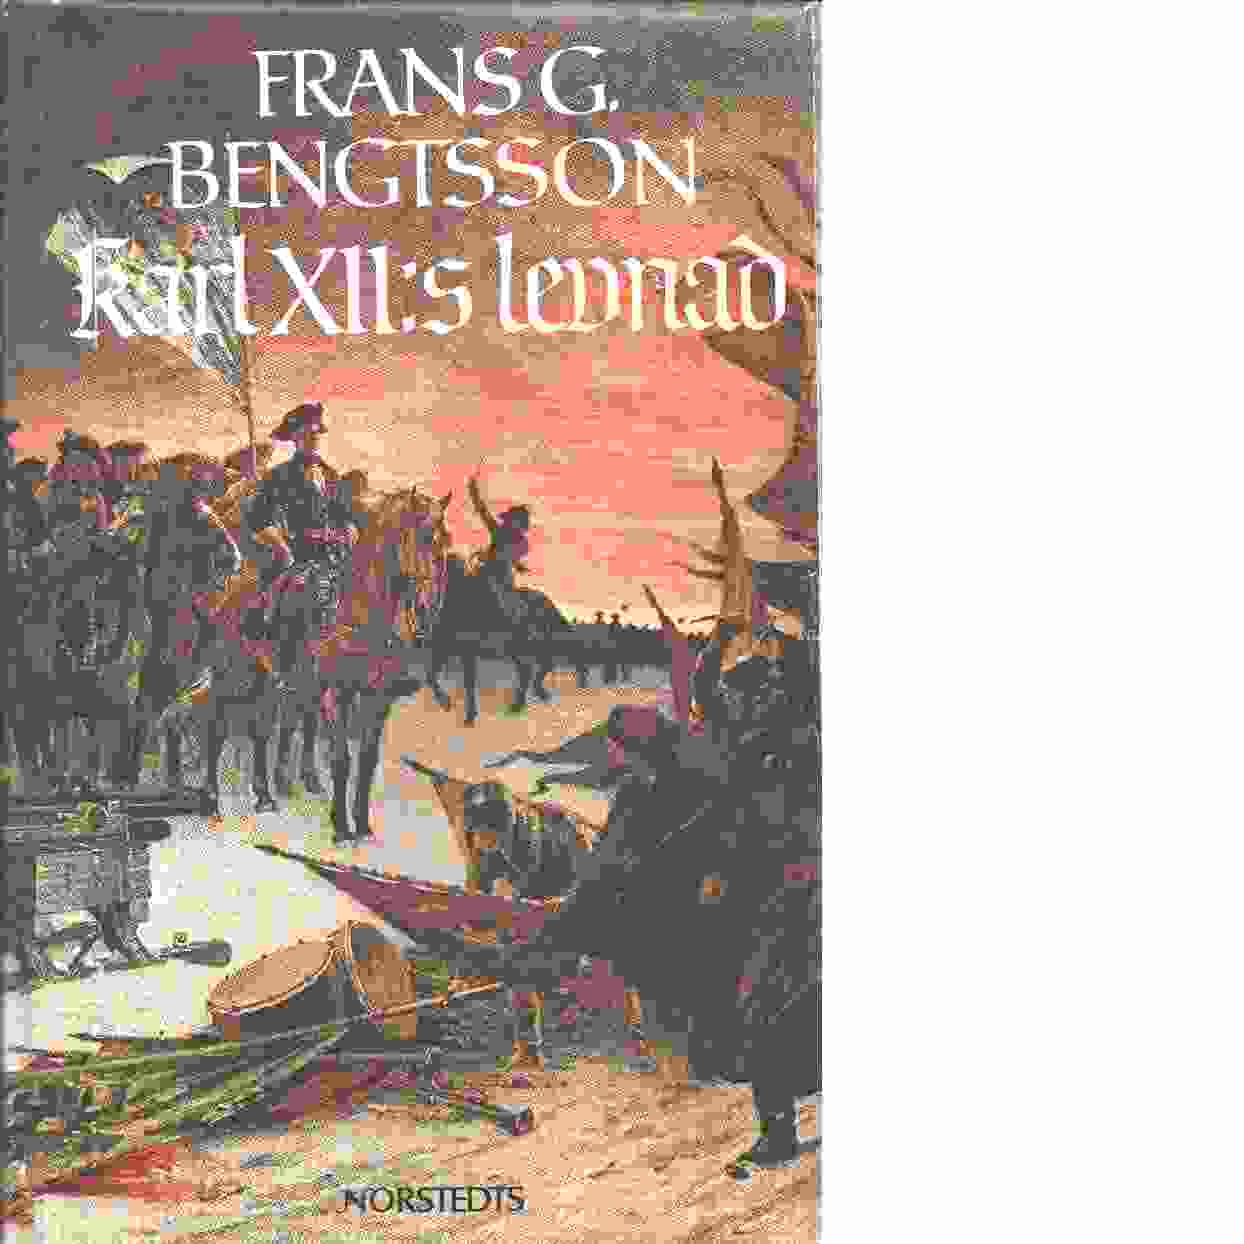 Karl XII:s levnad - Bengtsson, Frans G.